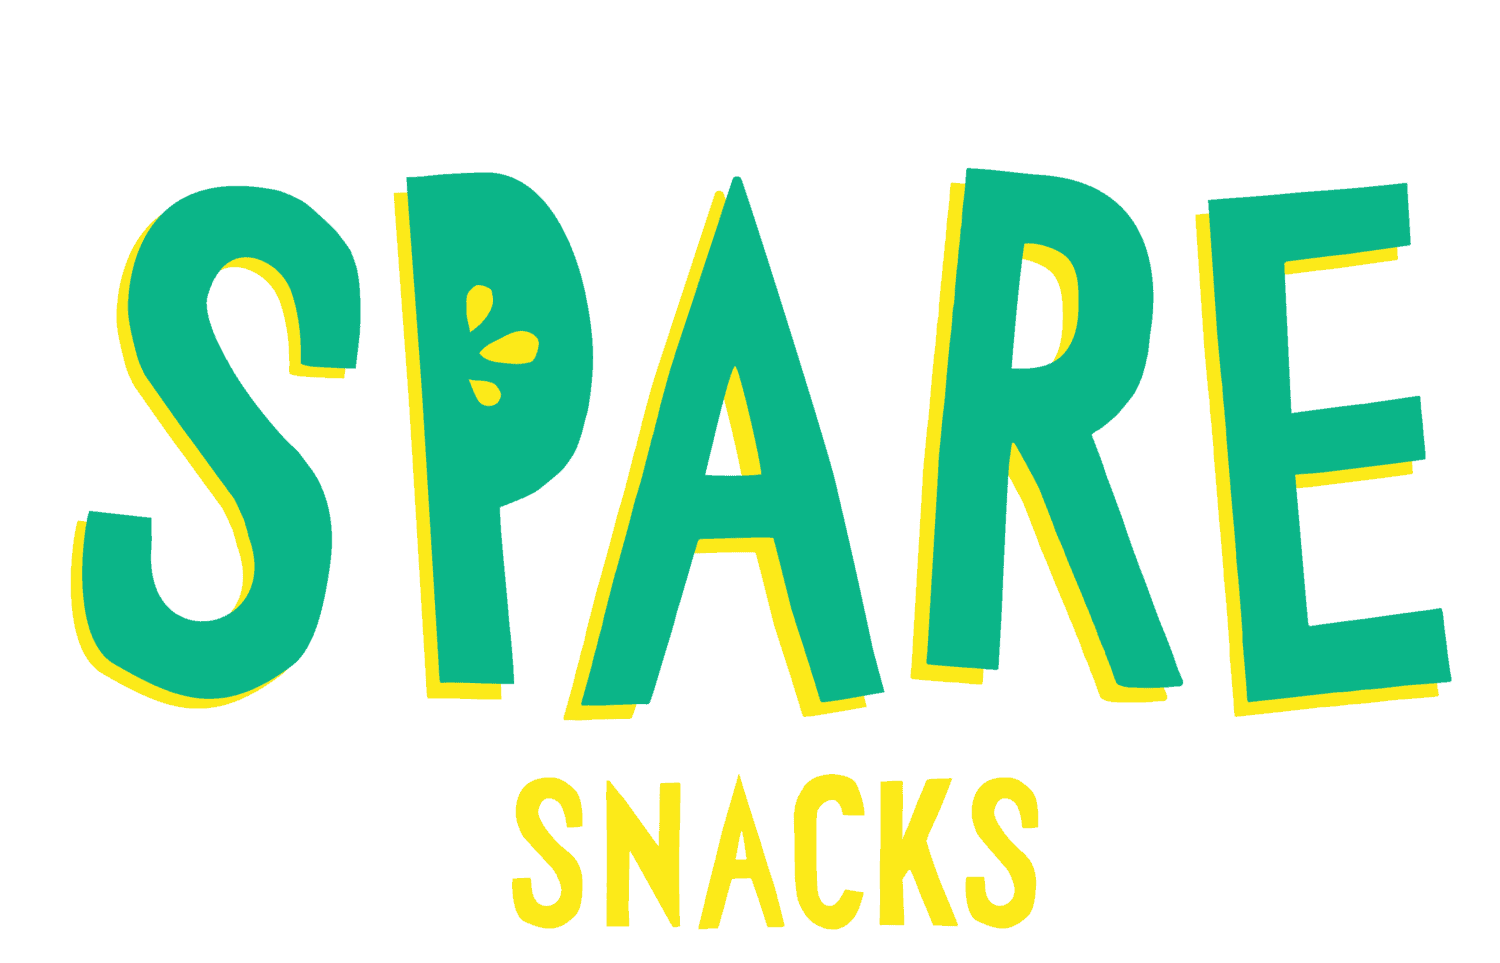 Spare Snacks